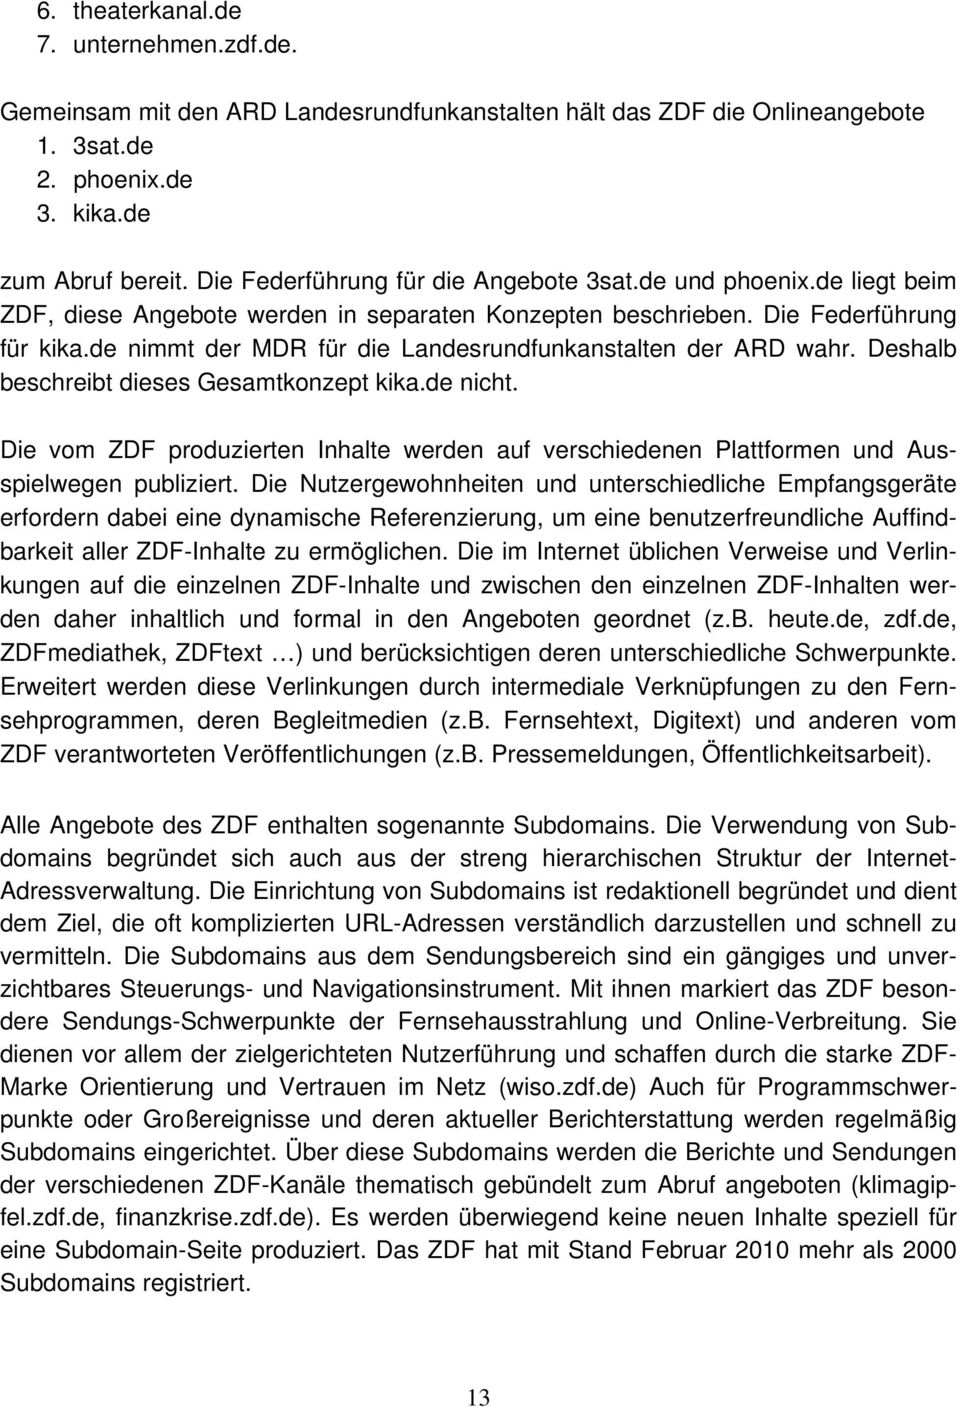 de nimmt der MDR für die Landesrundfunkanstalten der ARD wahr. Deshalb beschreibt dieses Gesamtkonzept kika.de nicht.